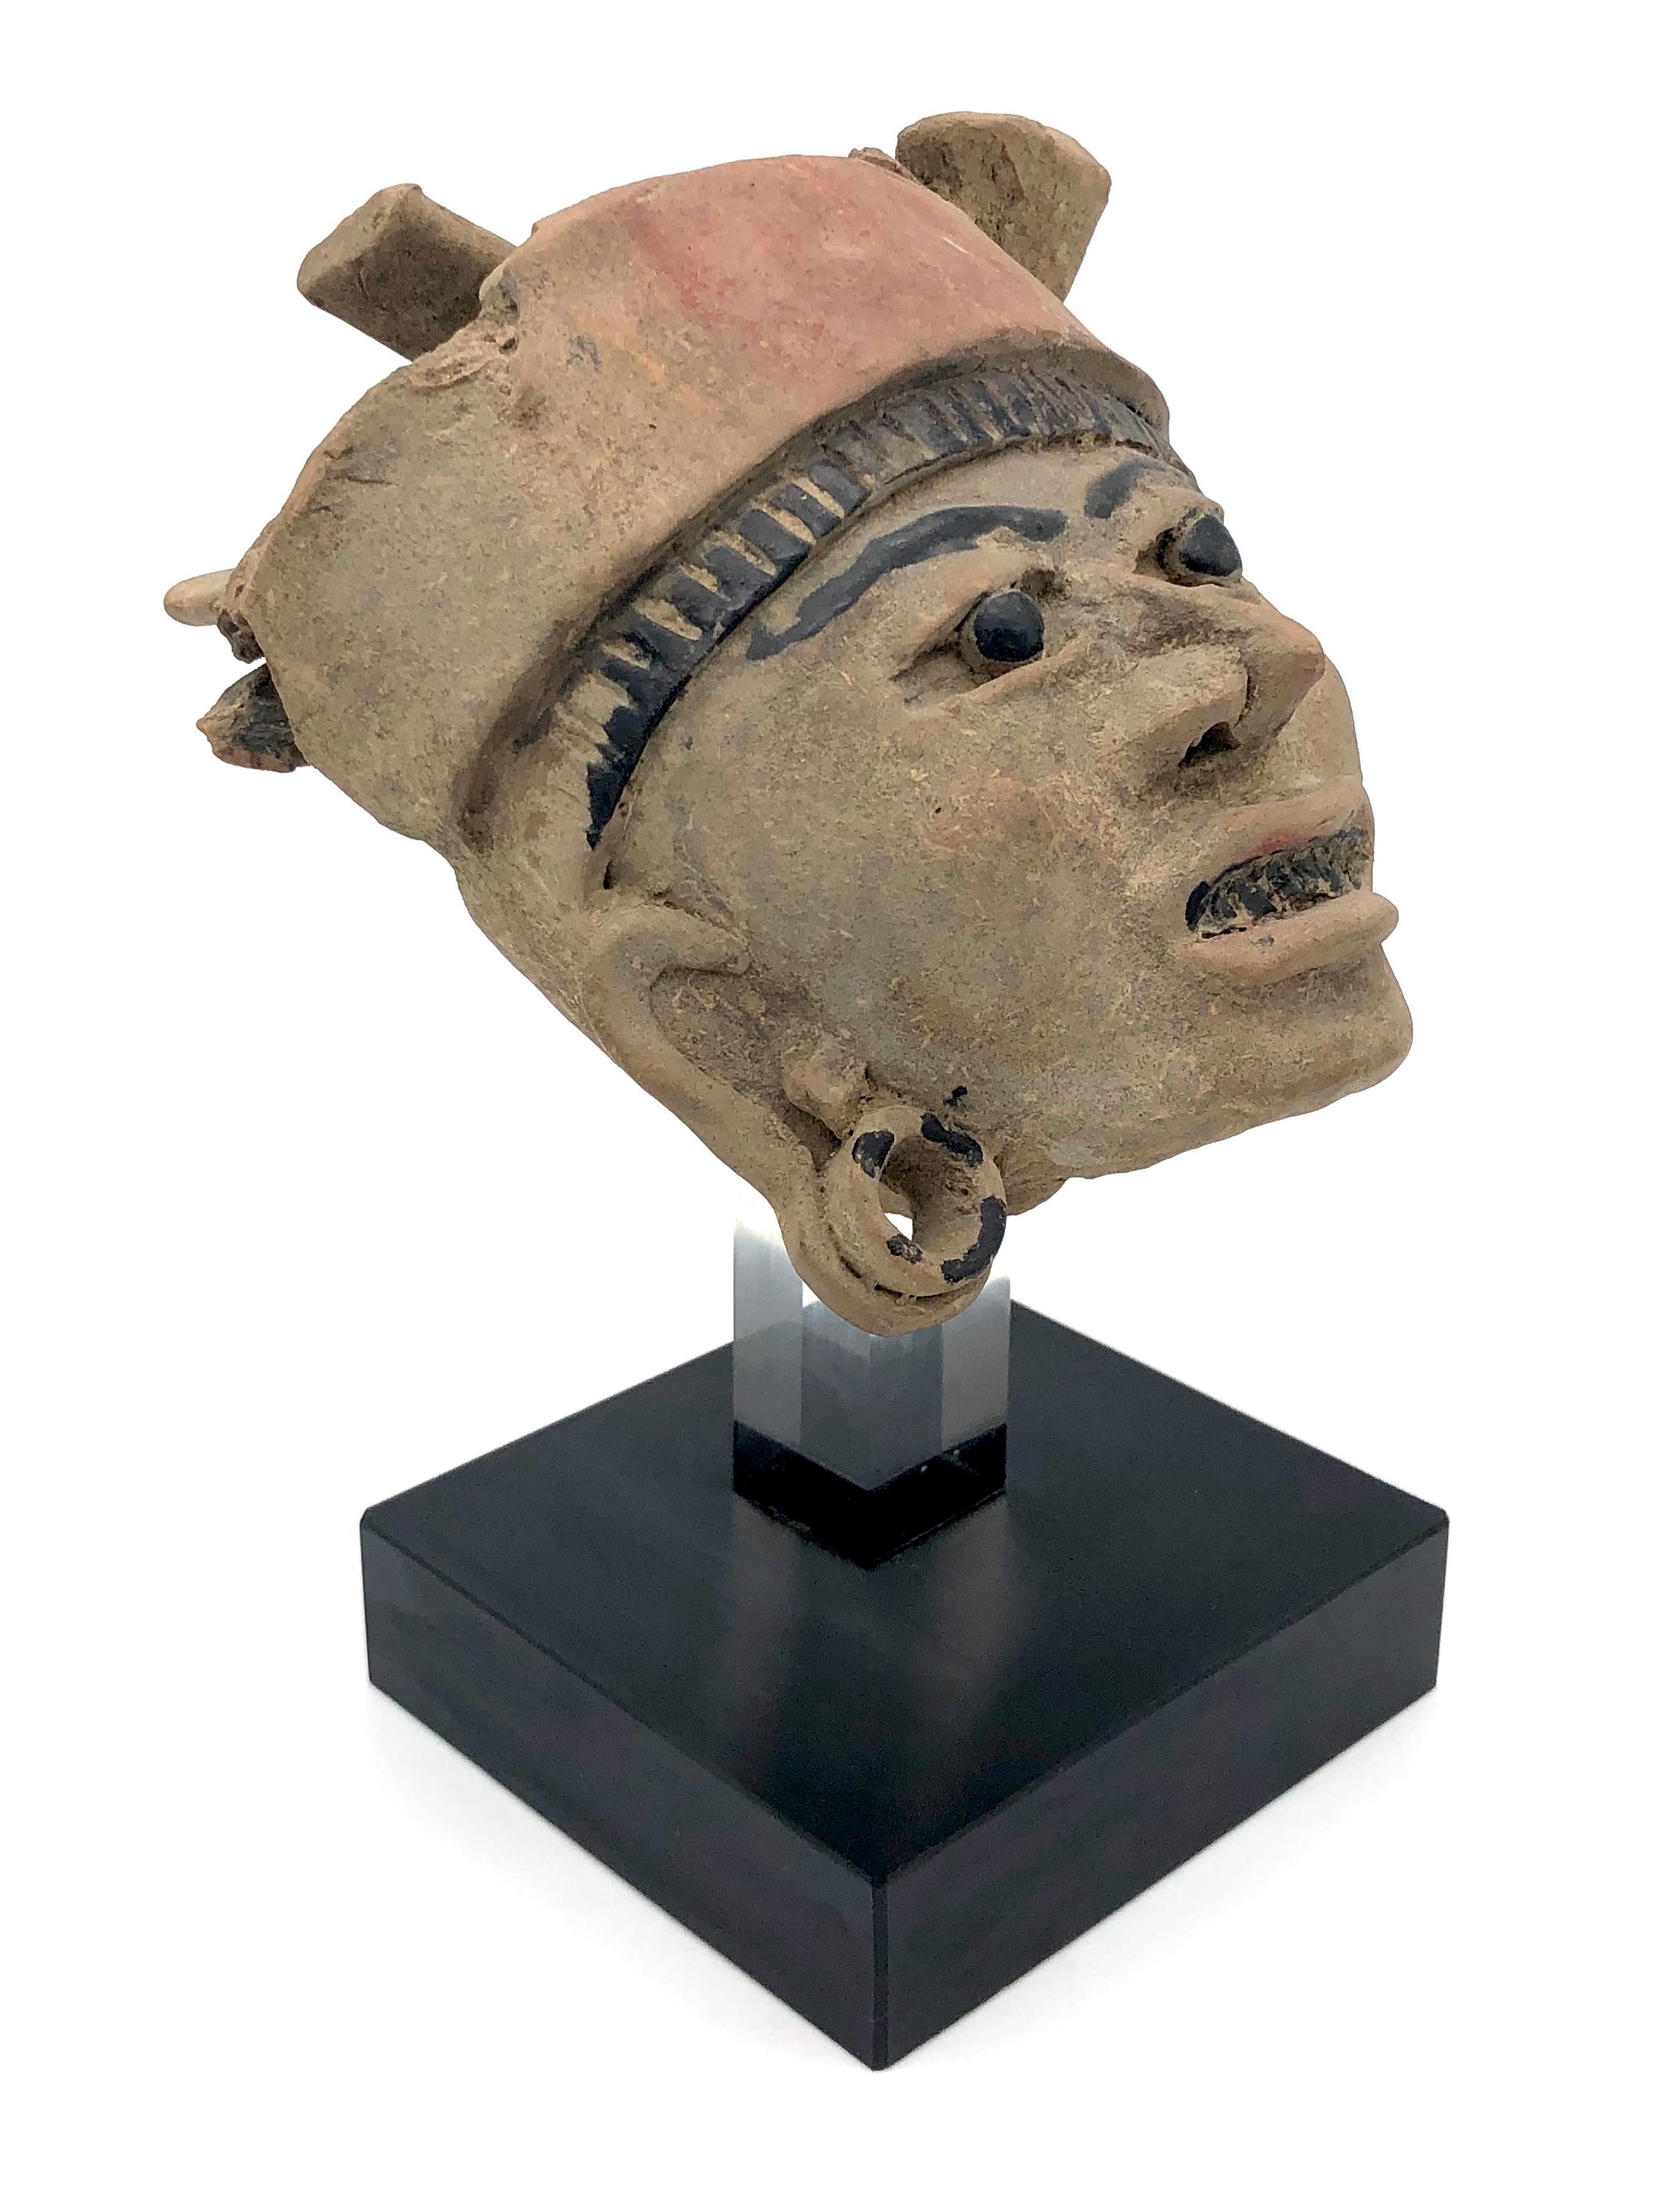 Diese ausdrucksstarke Skulptur des Kopfes eines Kriegers ist aus Terrakotta gefertigt und mit schwarzer Farbe bemalt.
Sie stammt aus der Remojadas-Kultur in der mexikanischen Küstenregion Veracruz.

Die Höhe des Kopfes ohne Ständer beträgt 16 cm.